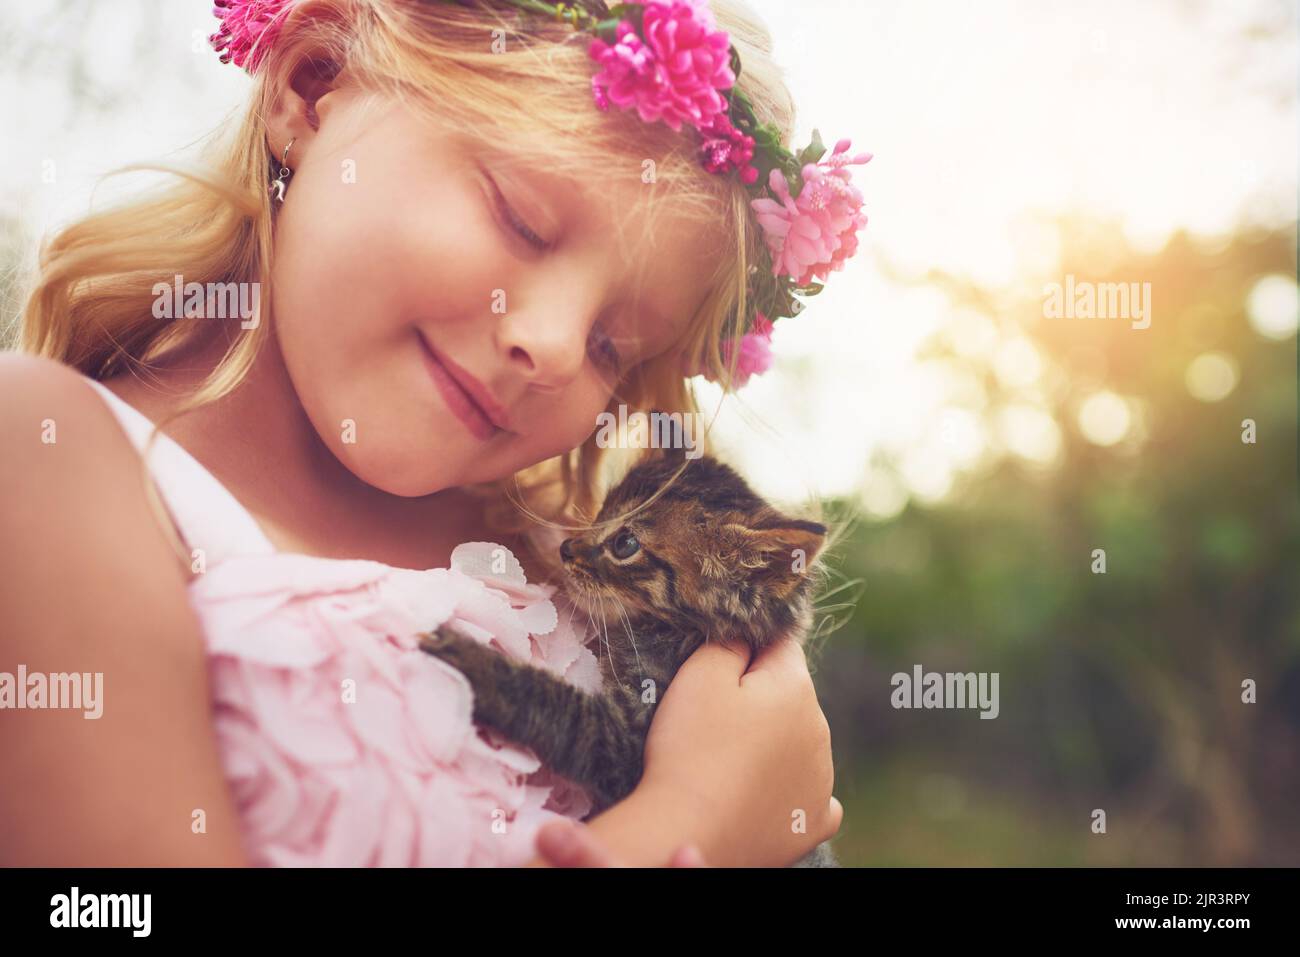 Mon ami furieux. Une petite fille heureuse tenant un chaton et souriant tout en étant assis dehors dans la nature. Banque D'Images